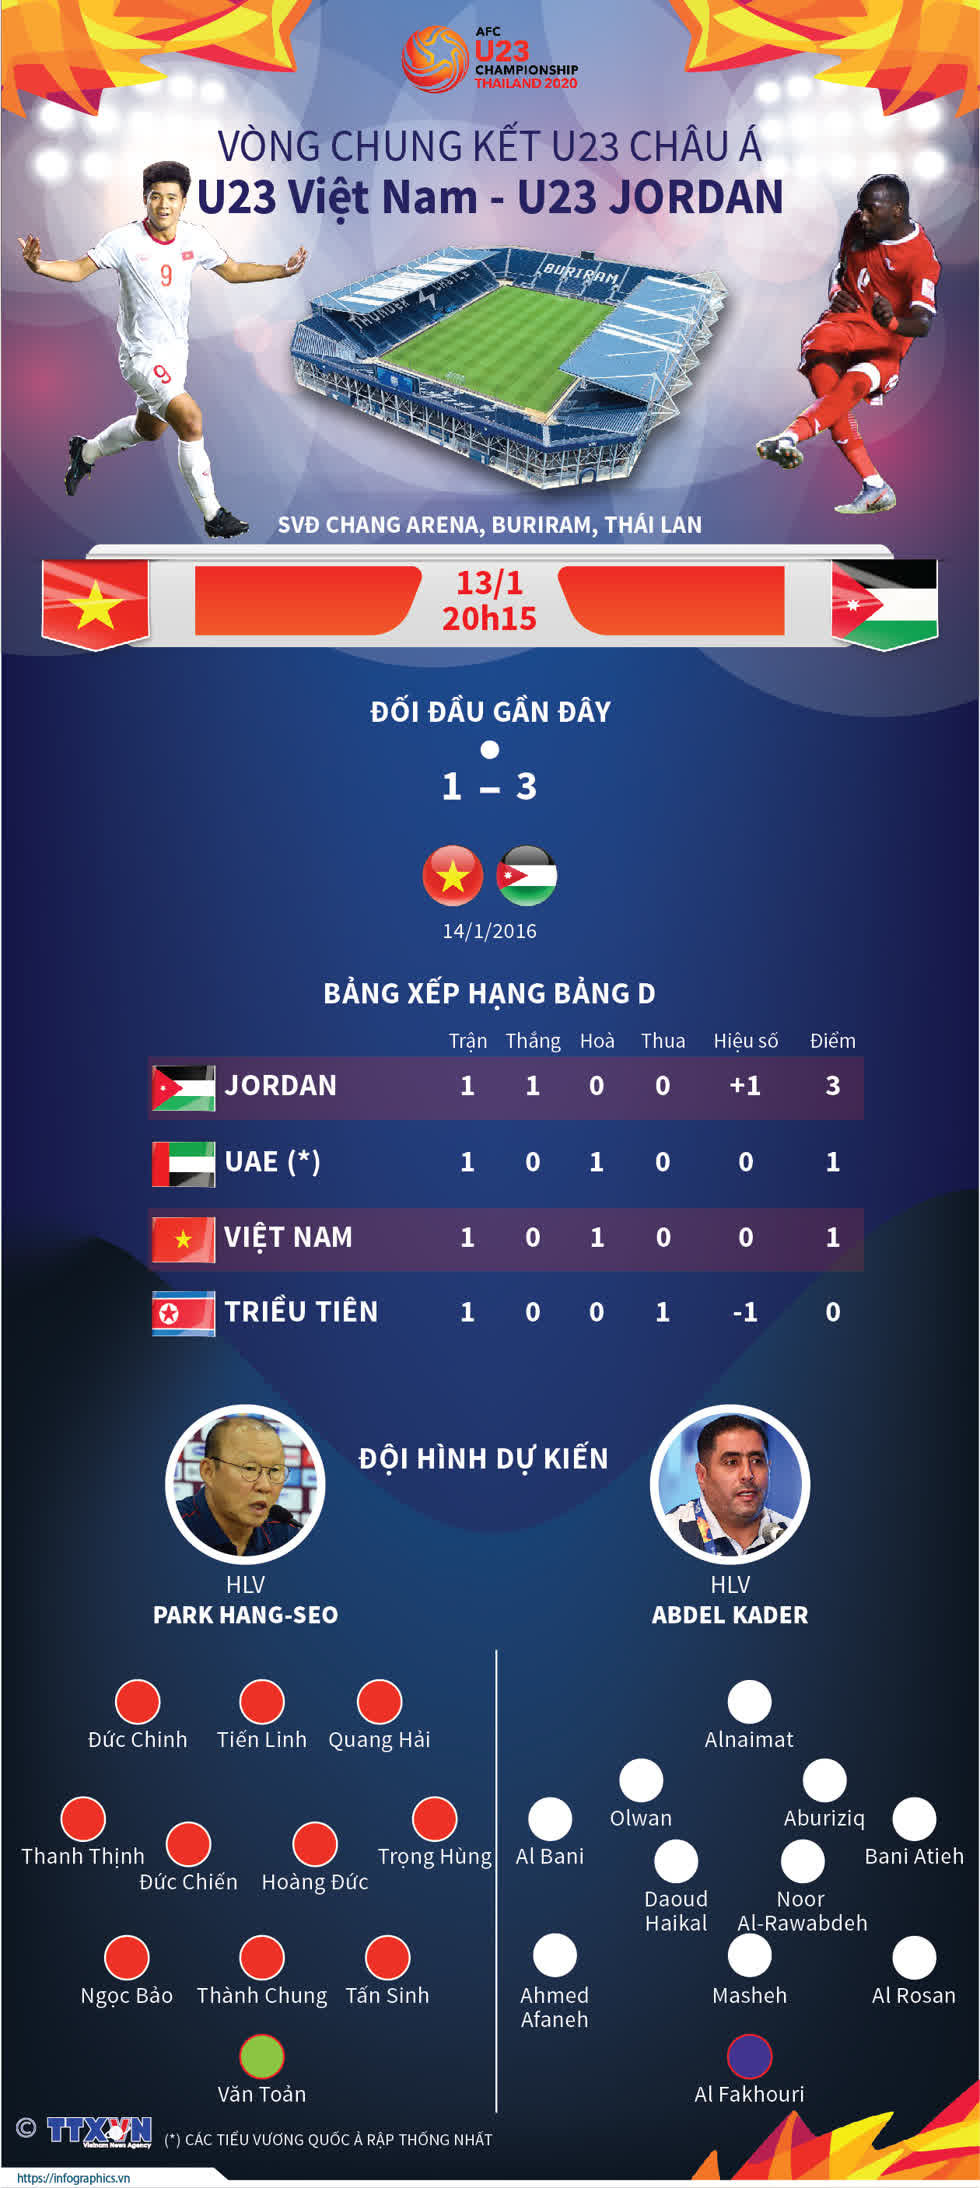 U23 Việt Nam vs U23 Jordan: Dự đoán kết quả 1 - 0